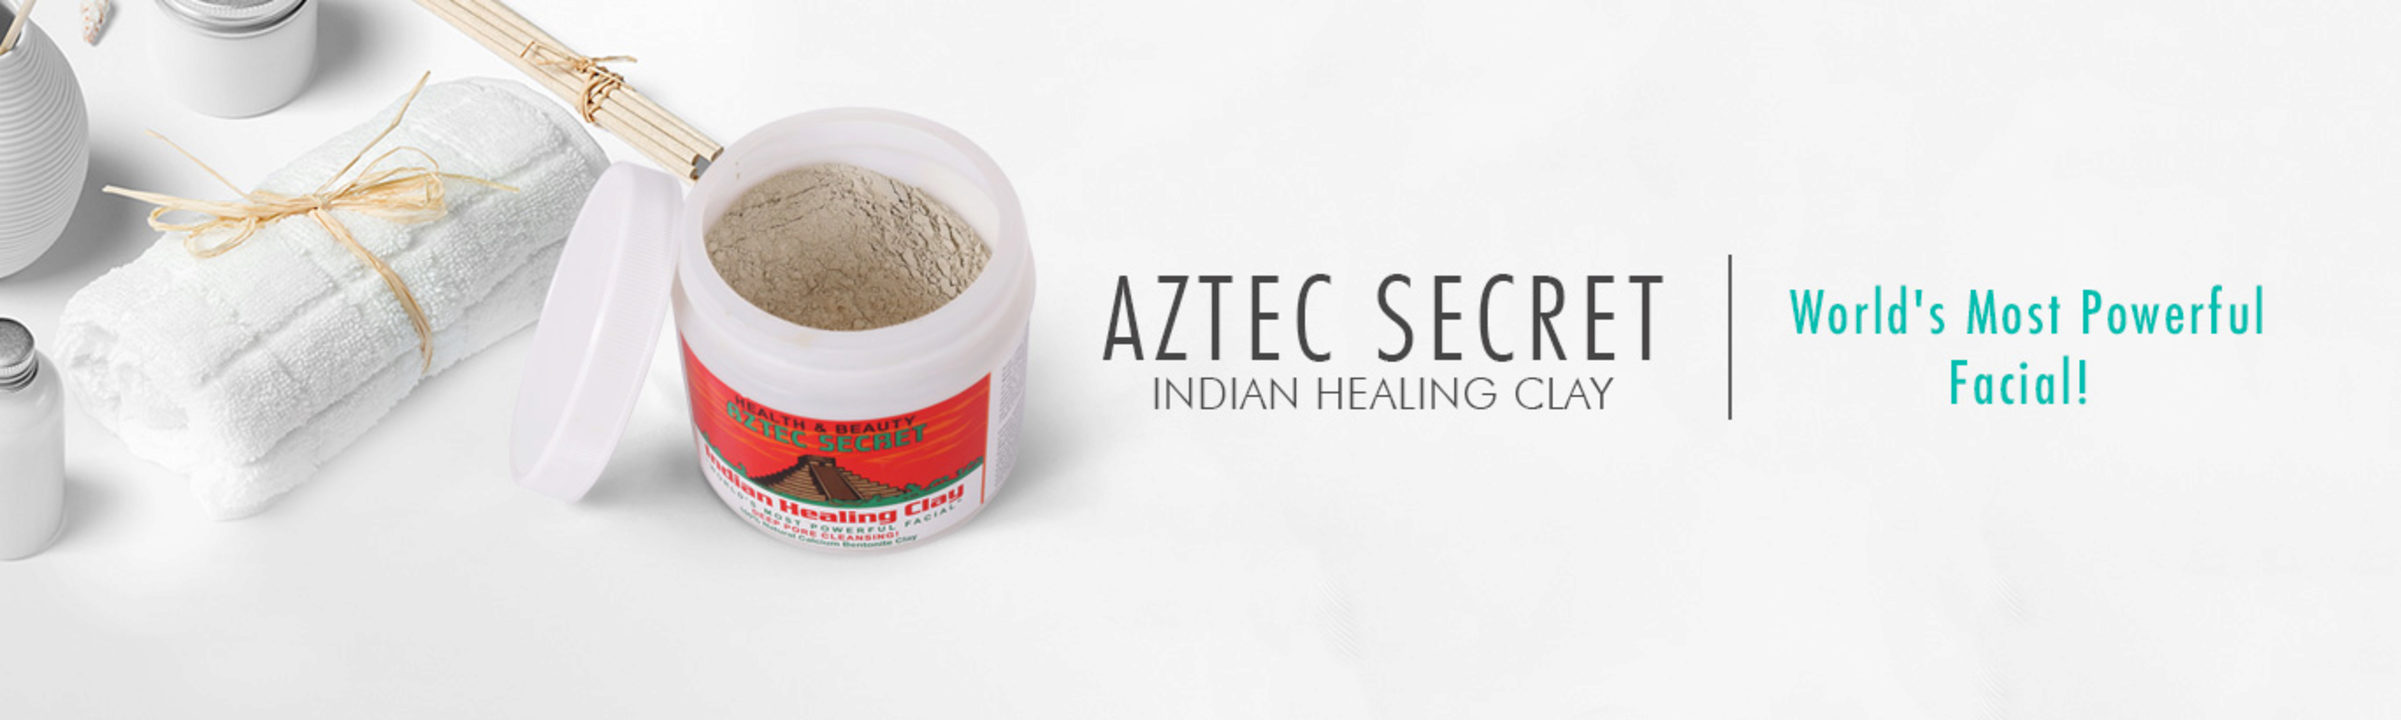 aztec-secret-banner